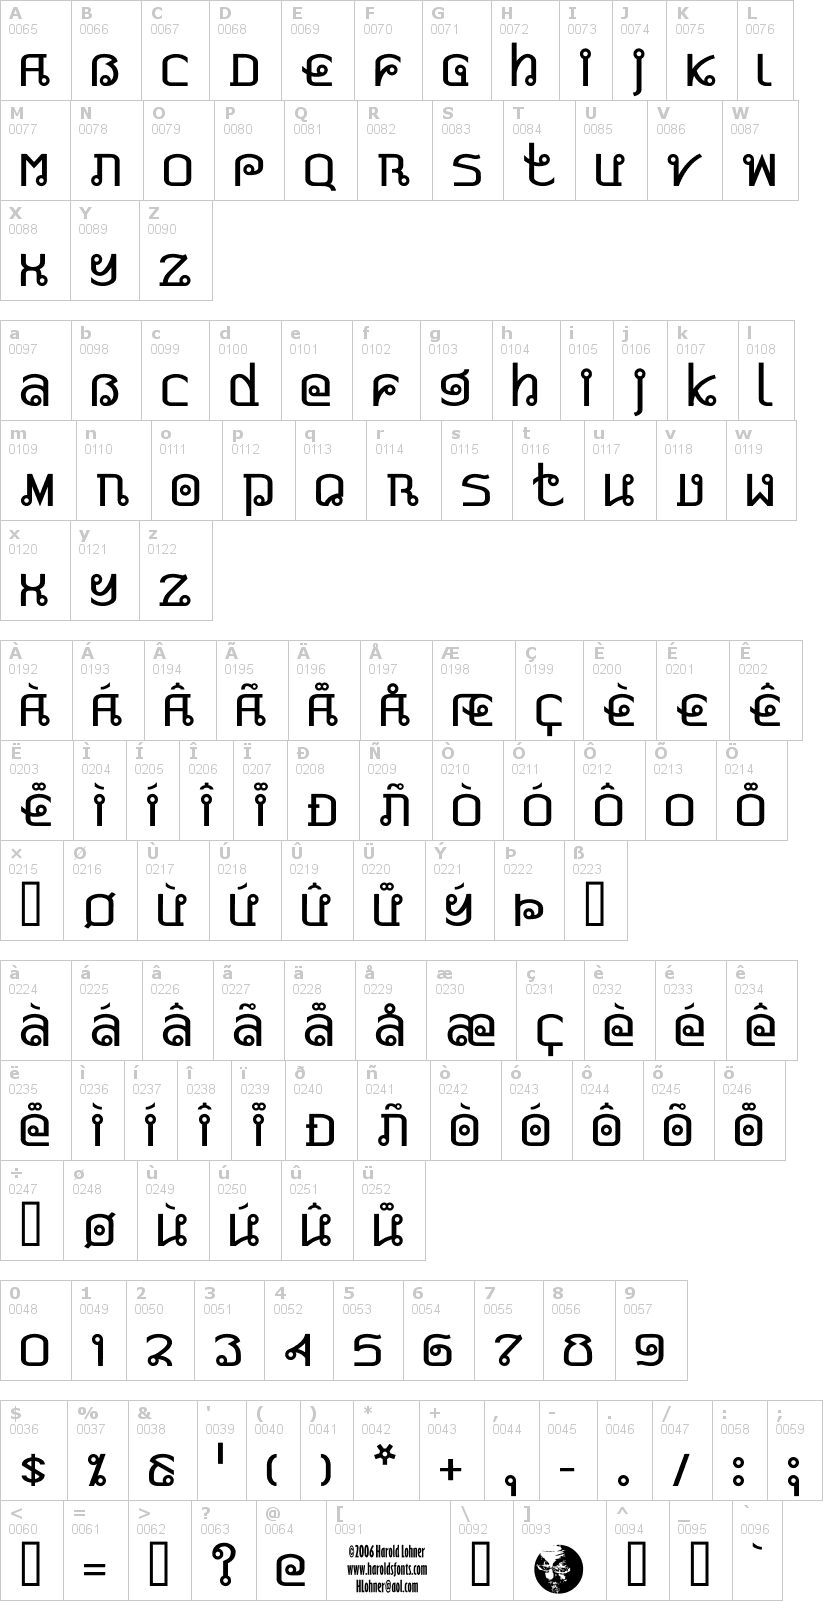 Lettere dell'alfabeto del font pad-thai con le quali è possibile realizzare adesivi prespaziati